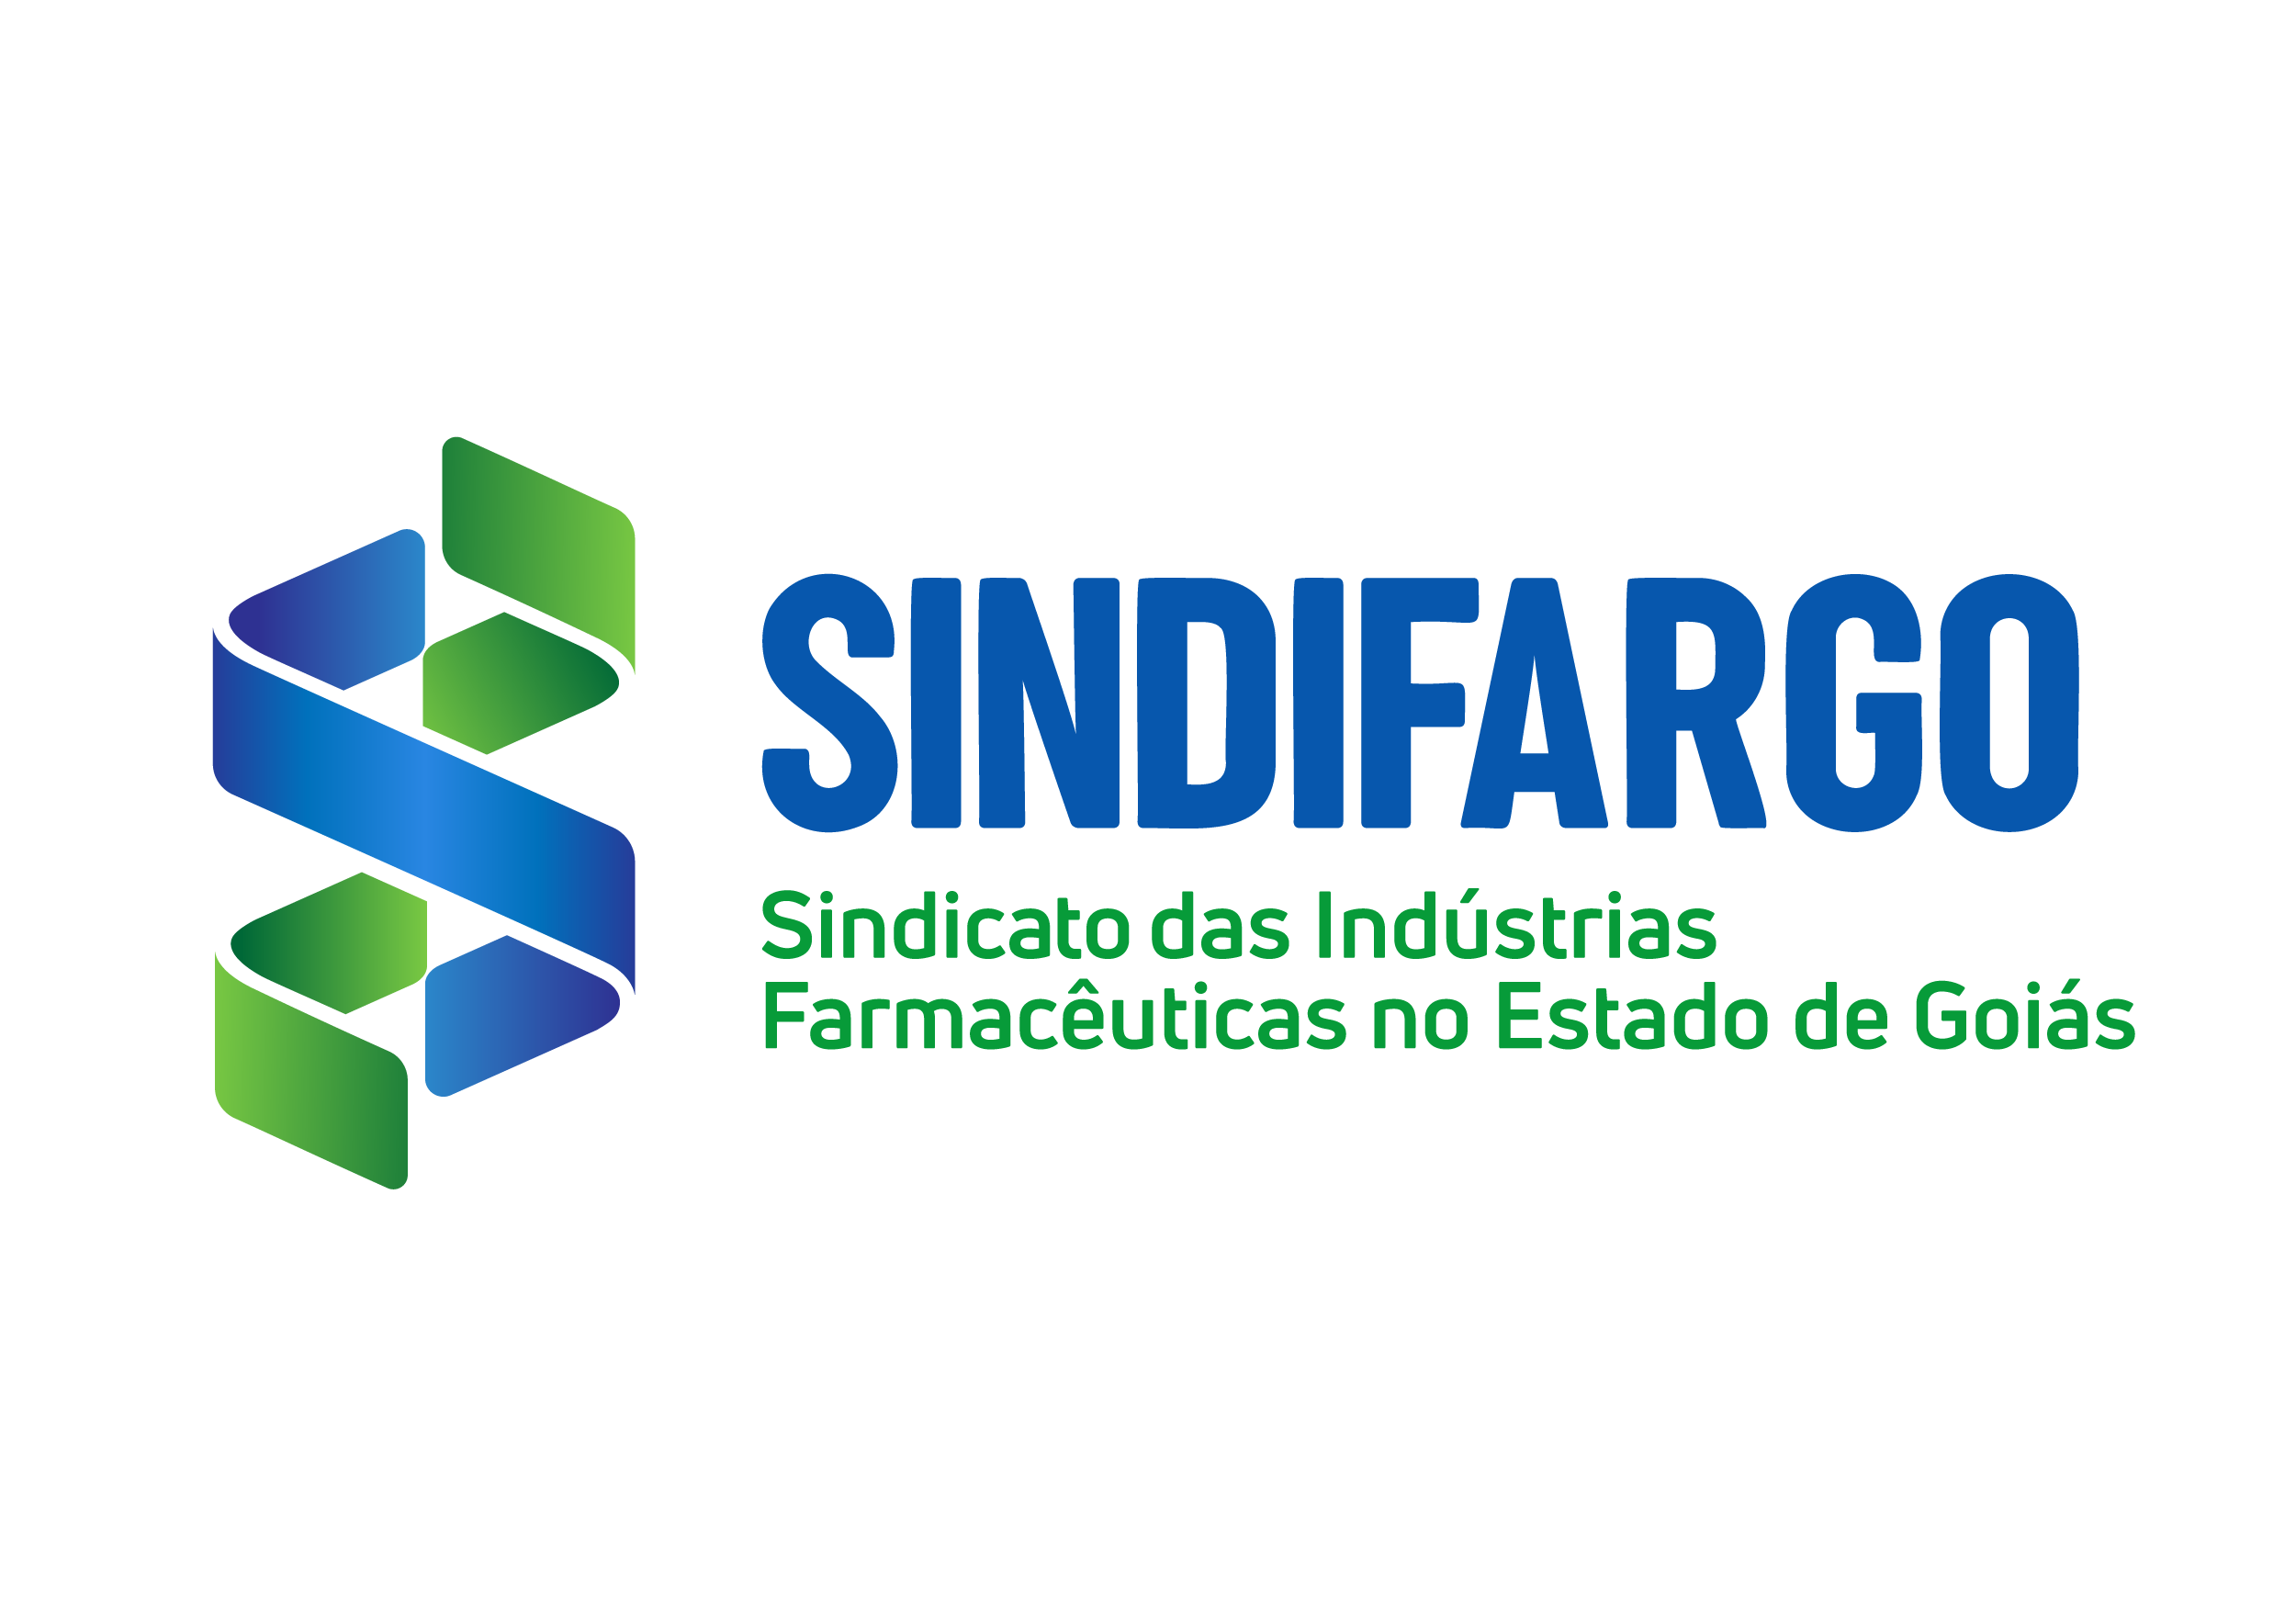 SINDIFARGO - Sindicato das Indústrias Farmacêuticas no Estado de Goiás